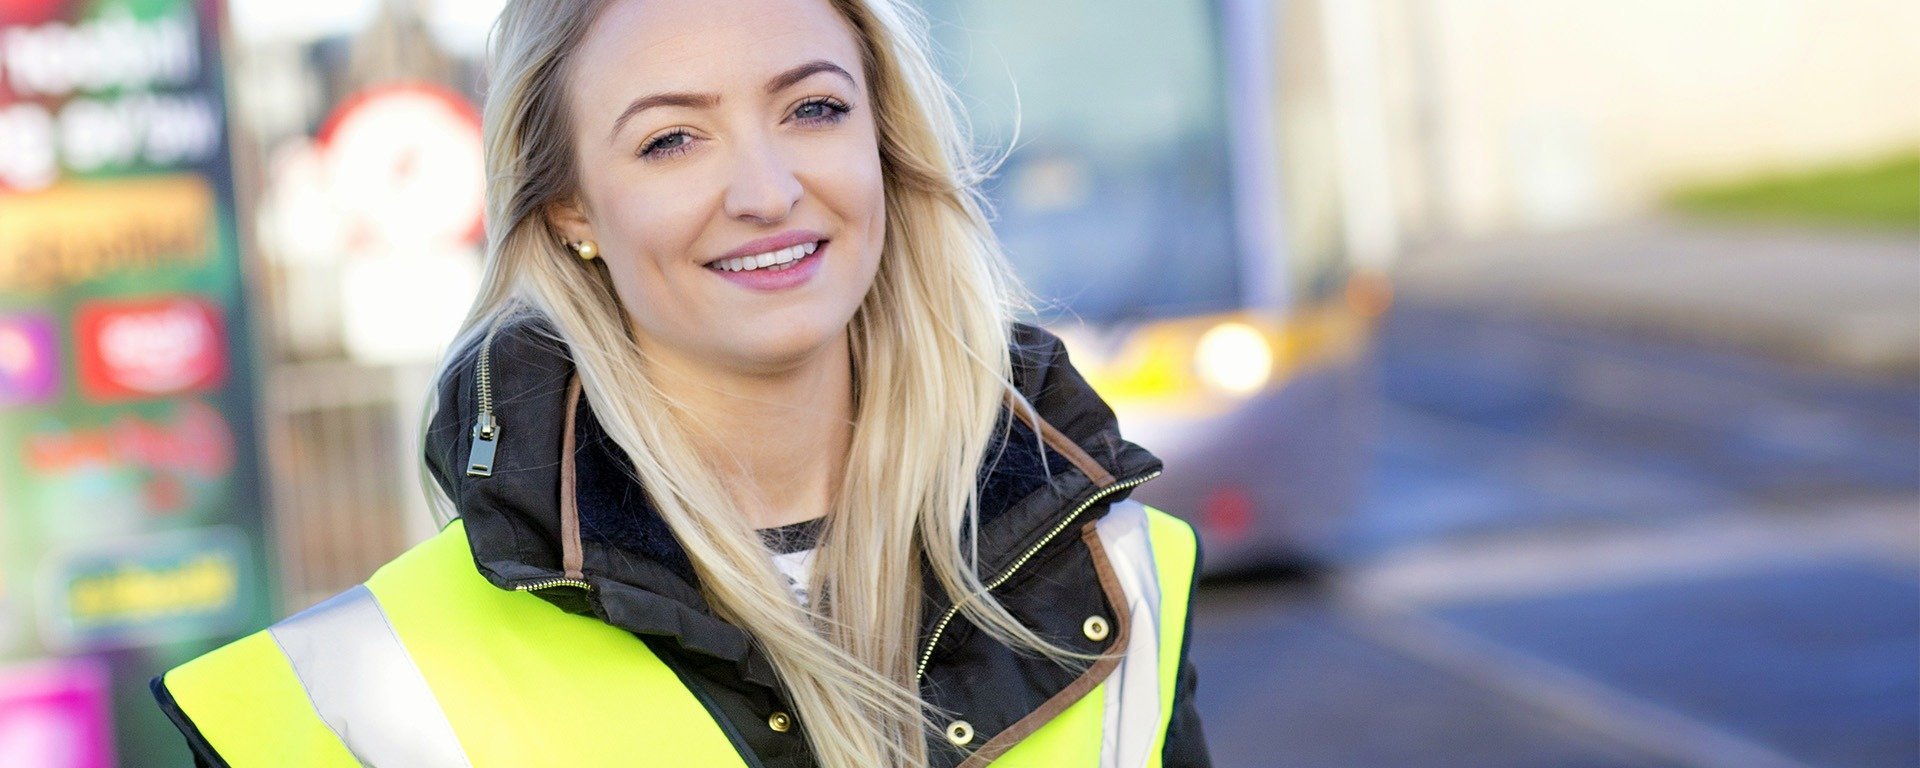 jeune femme souriante avec veste de sureté fluo jaune arrière plan flou bus